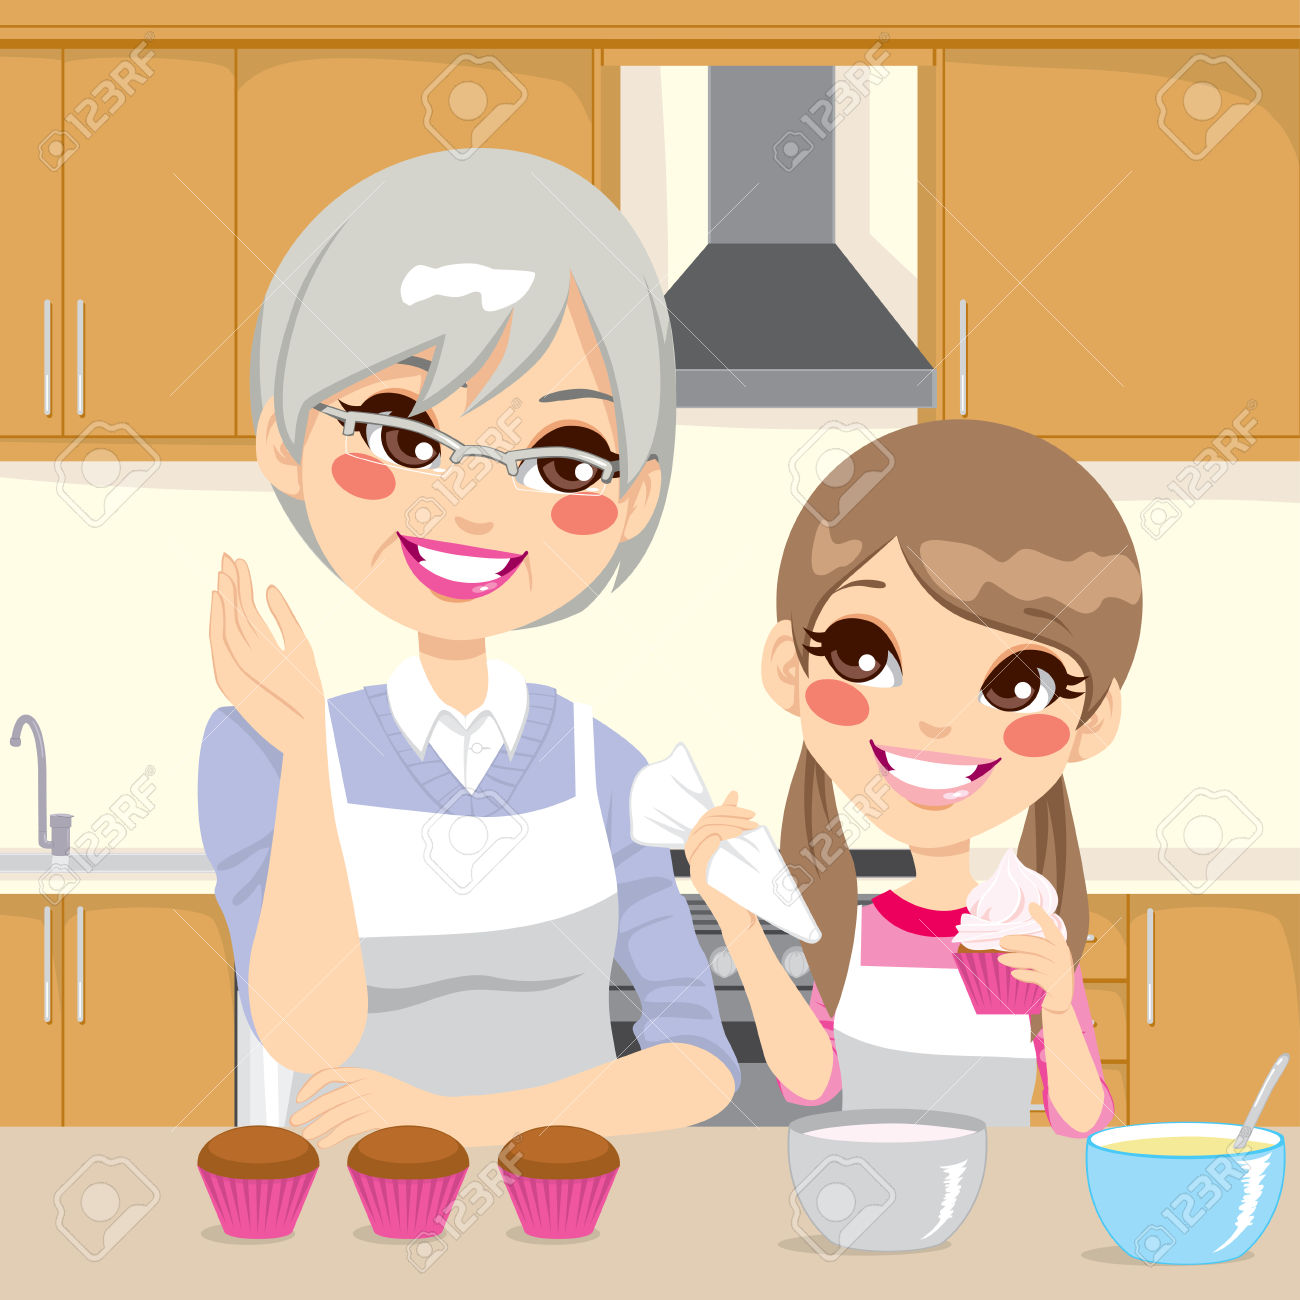 Внучок и внучка доставка еды